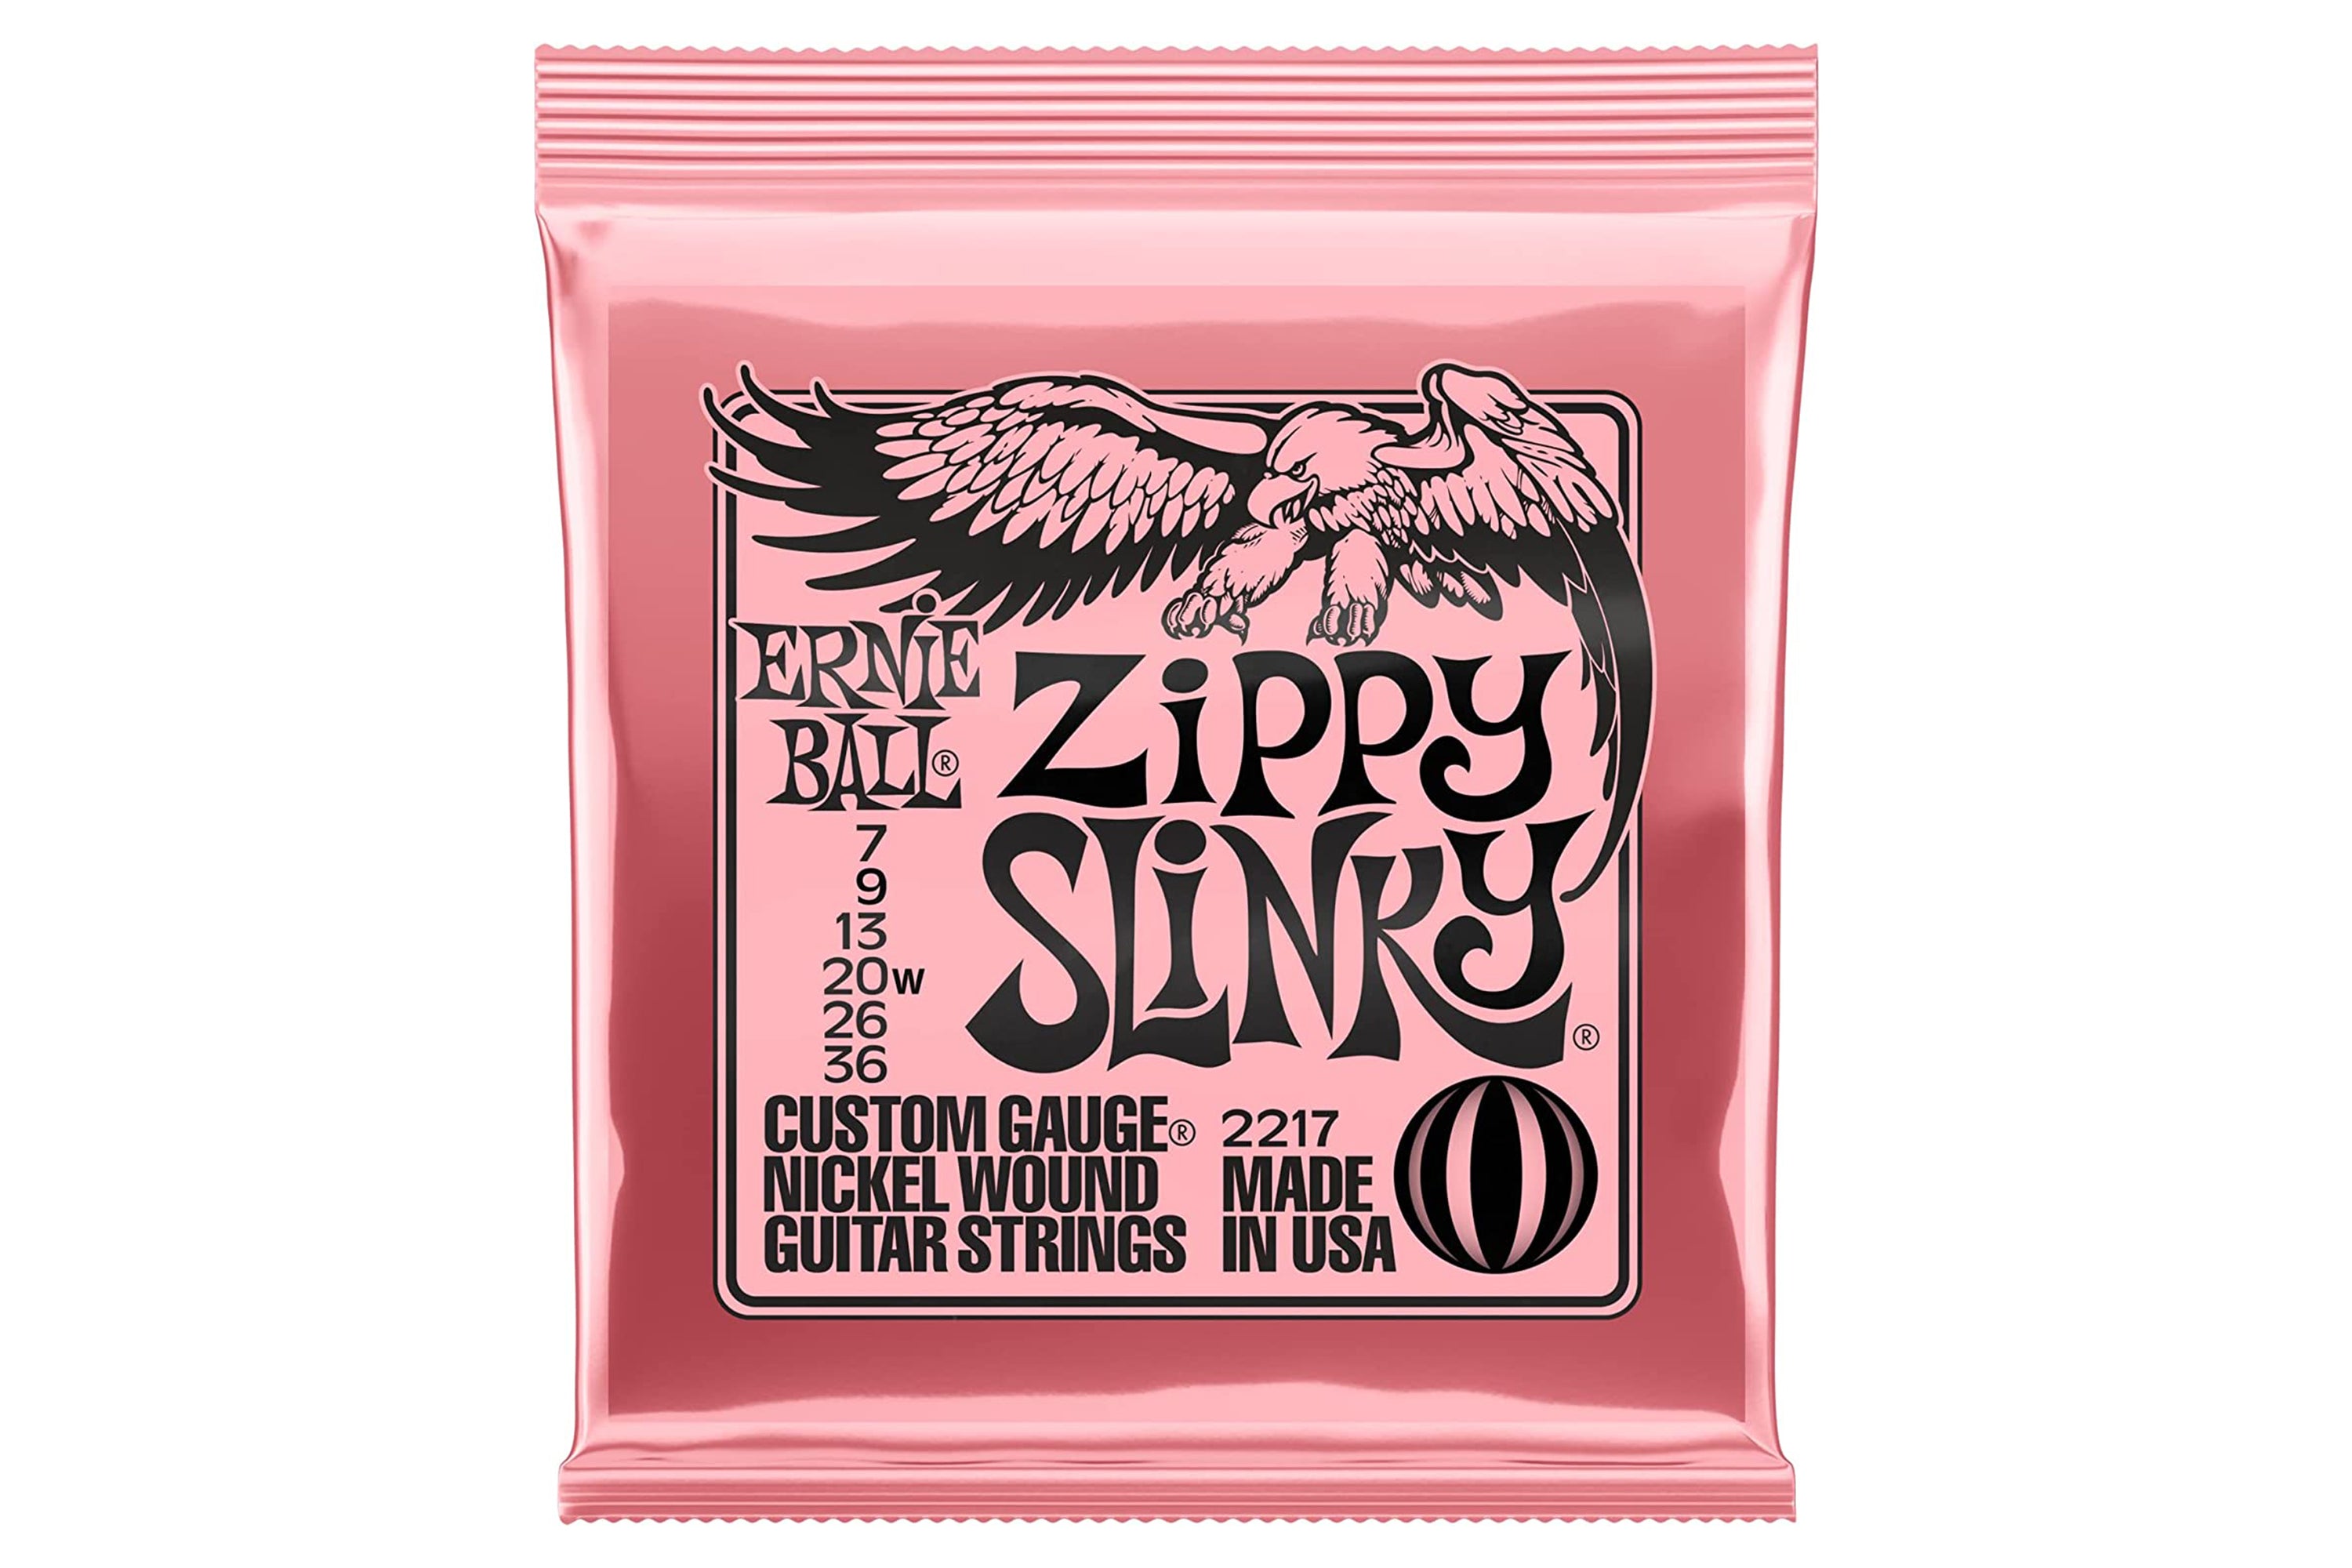 Ernie Ball Zippy Slinky Strings